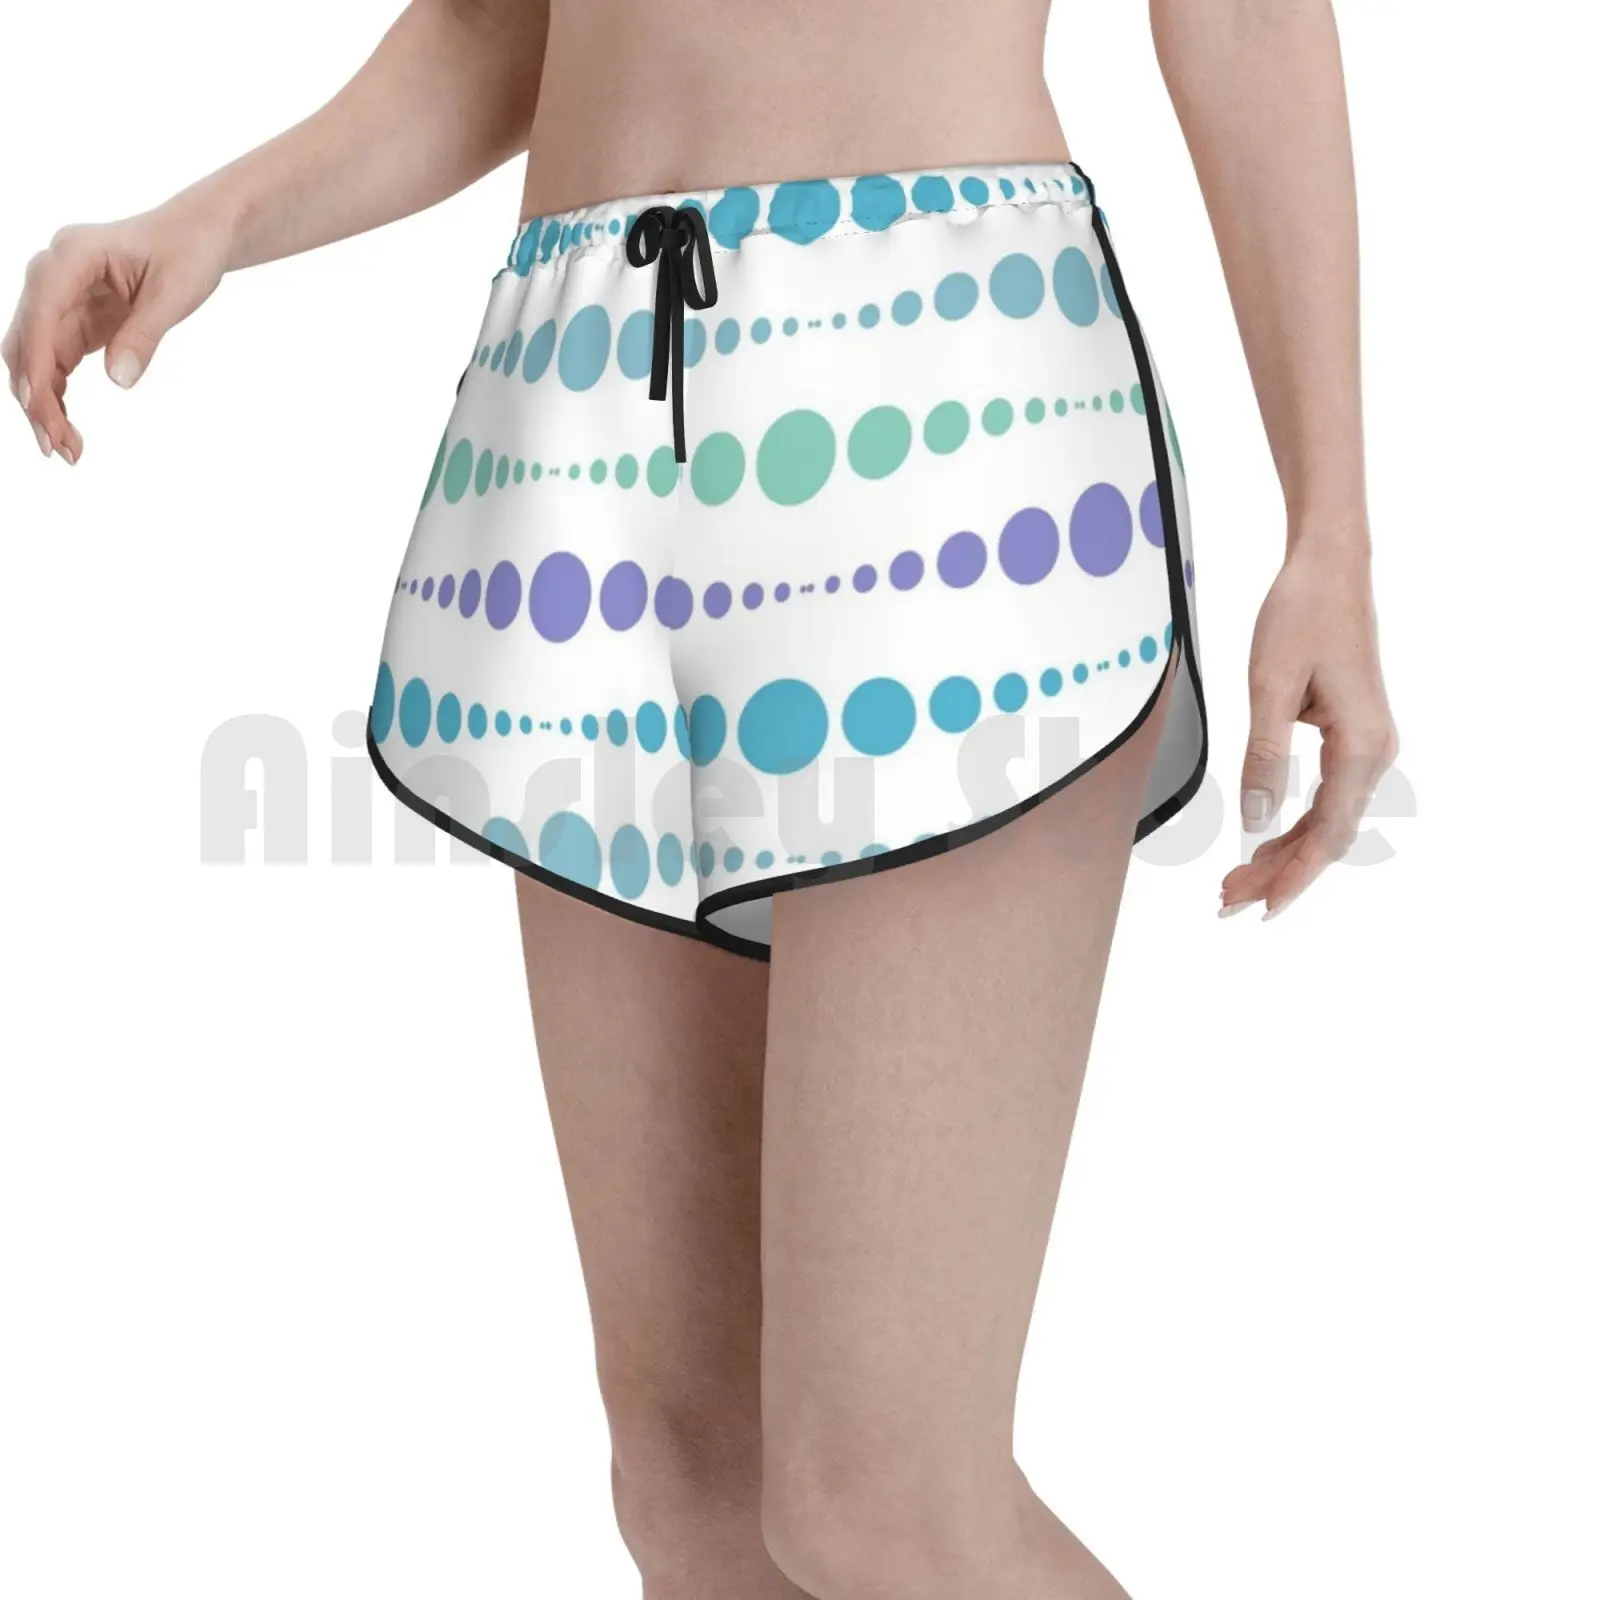 

Шорты для плавания в горошек [Wander], женские пляжные шорты, Современный Узор, абстрактная геометрическая форма, стильные круги